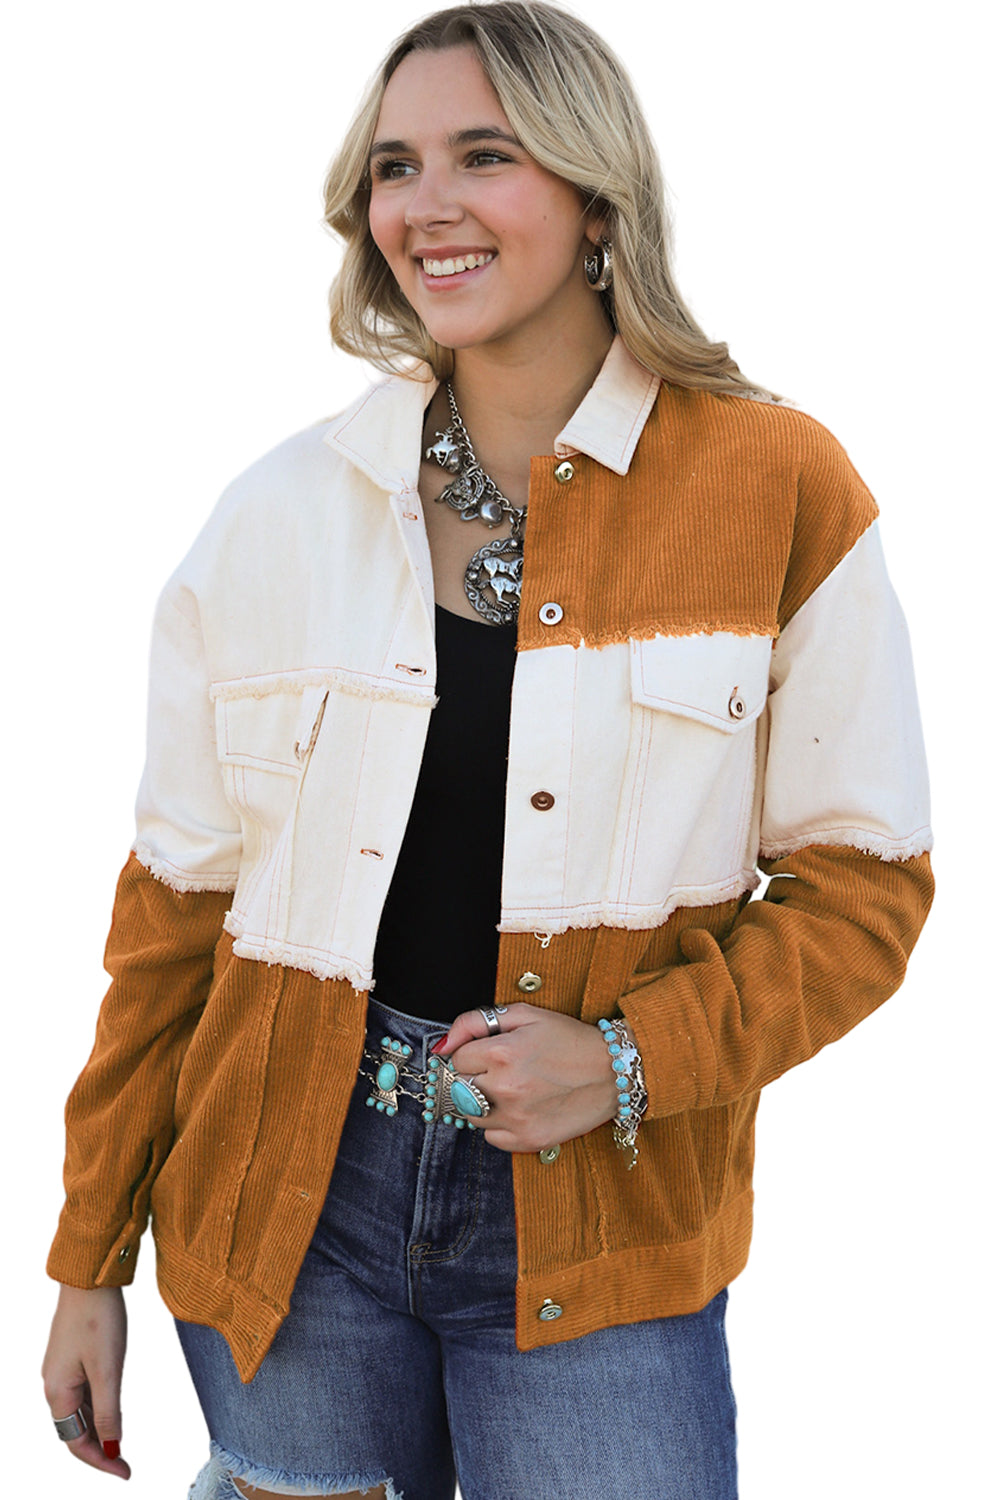 Smeđa jakna s preklopnim džepom i rubovima u boji smeđe boje